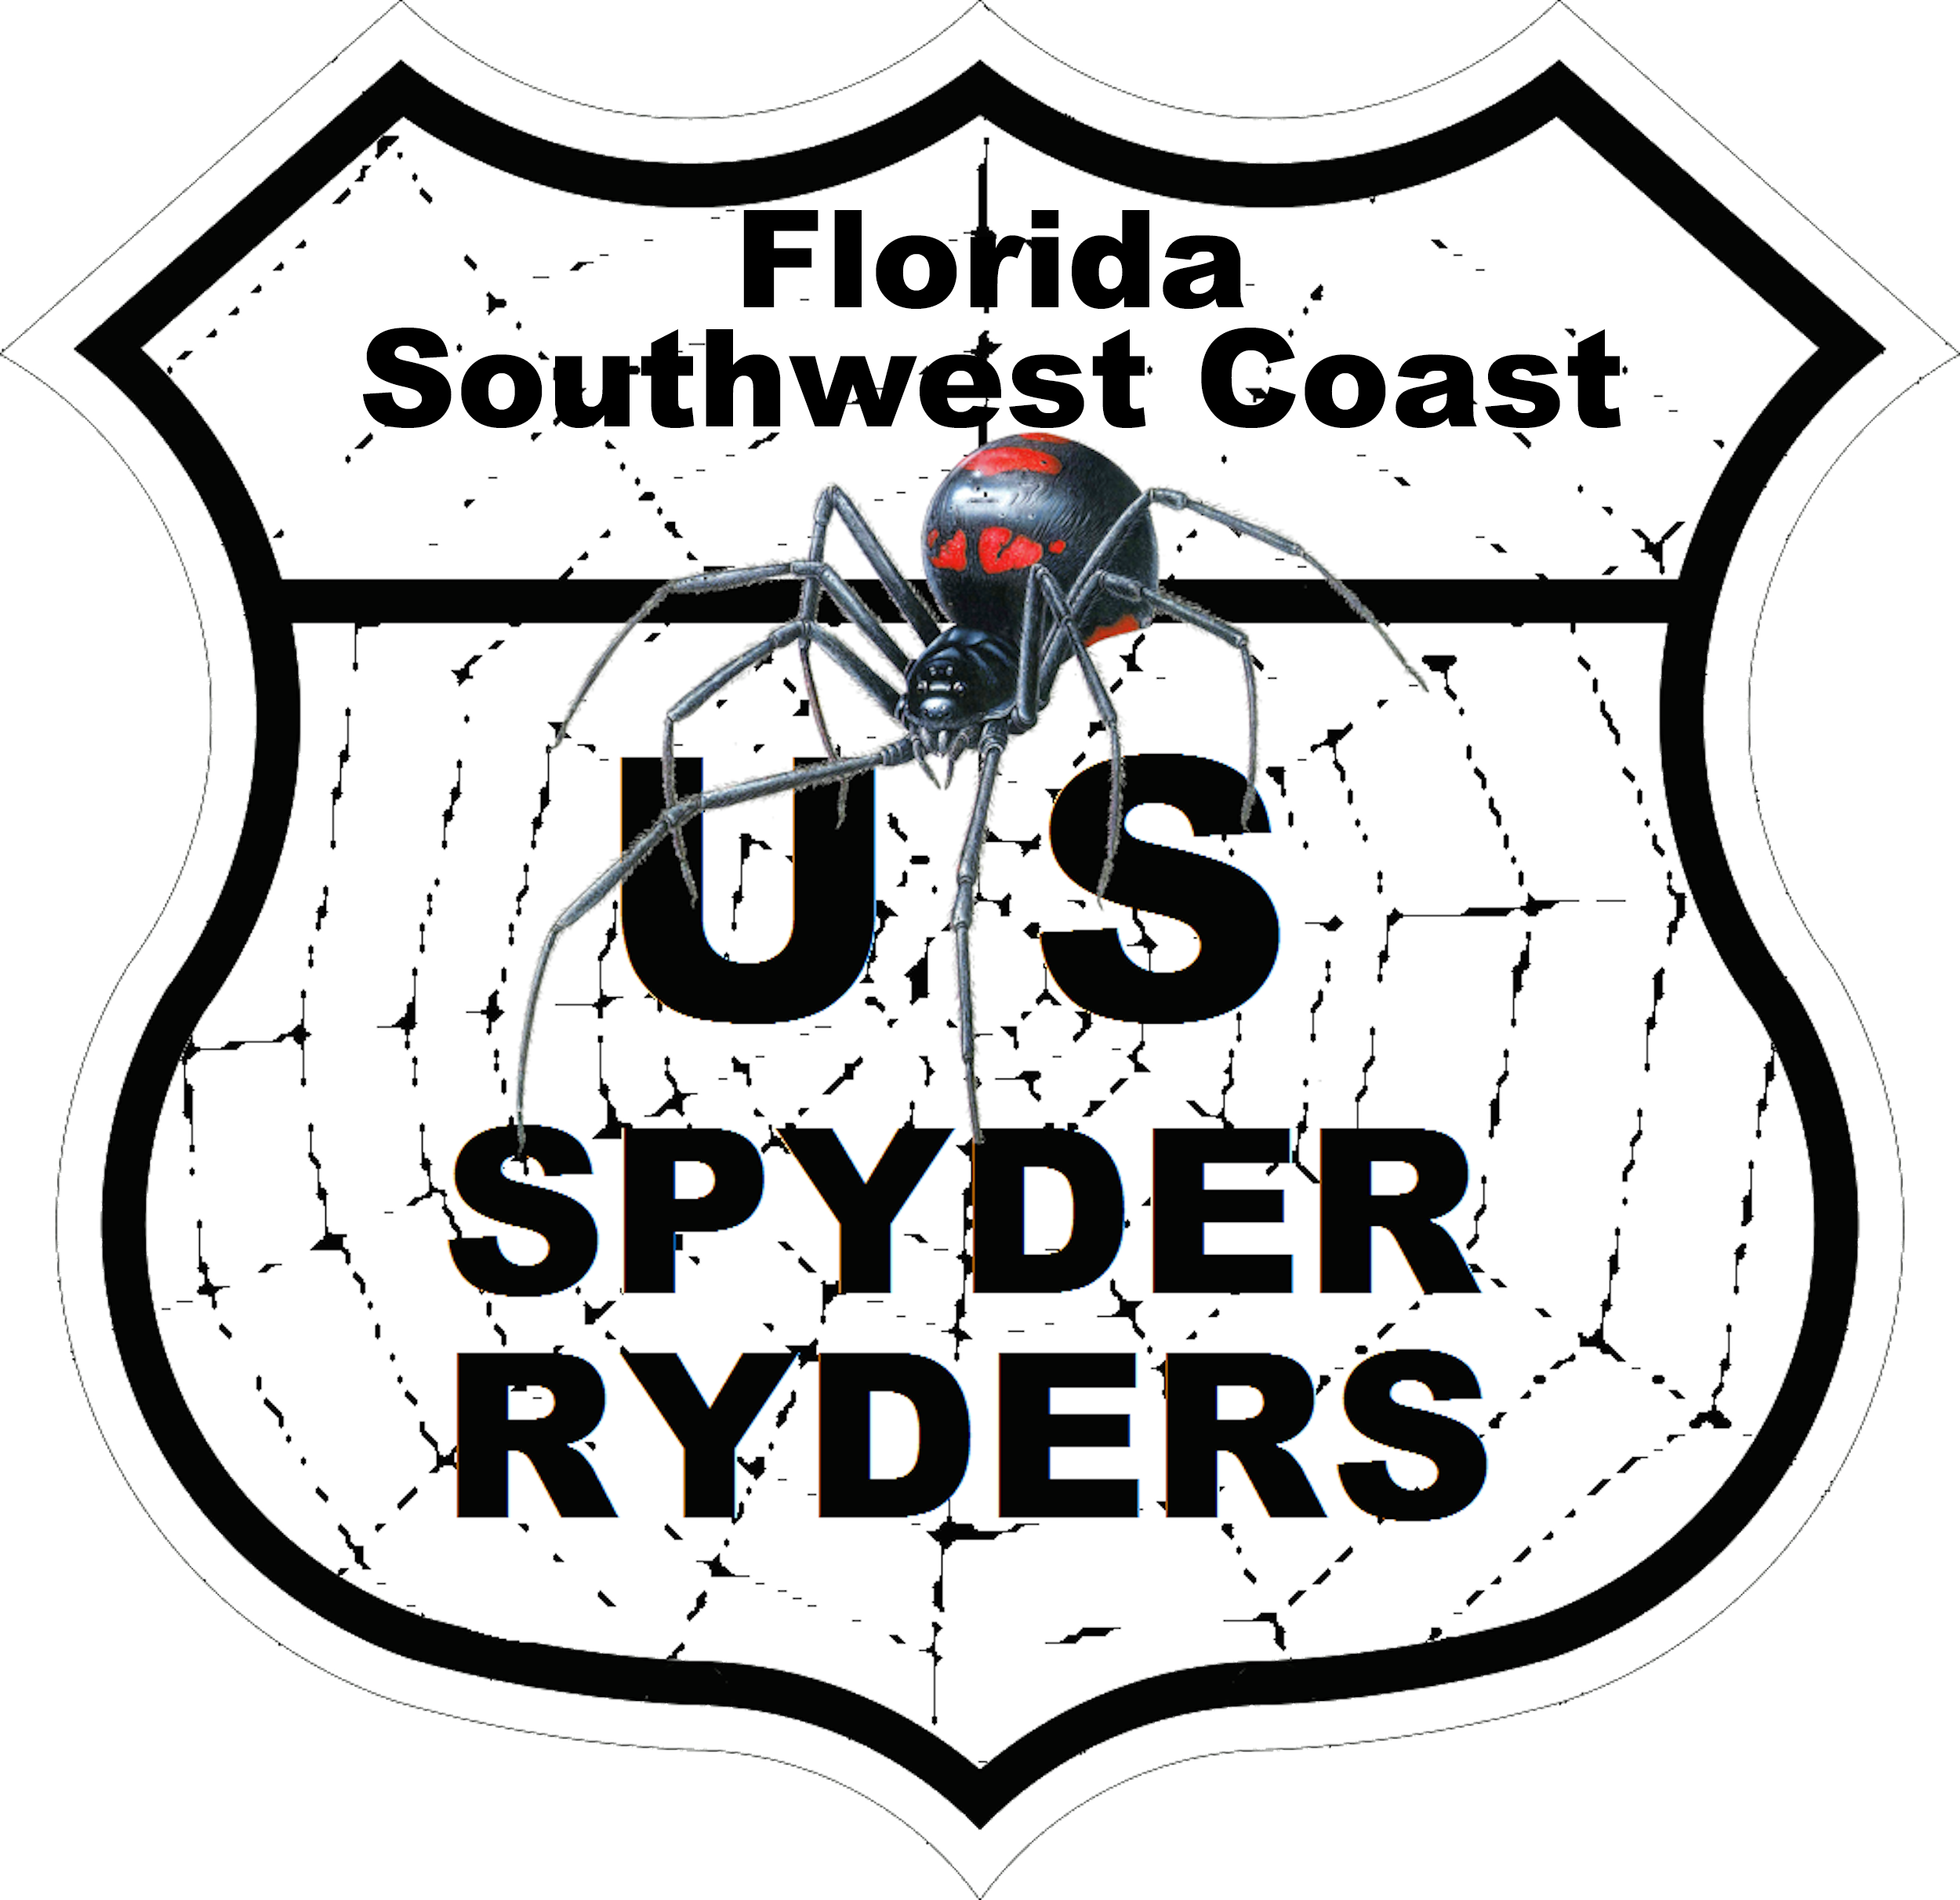 US_Spyder_Ryder_Florida SW Coast.png